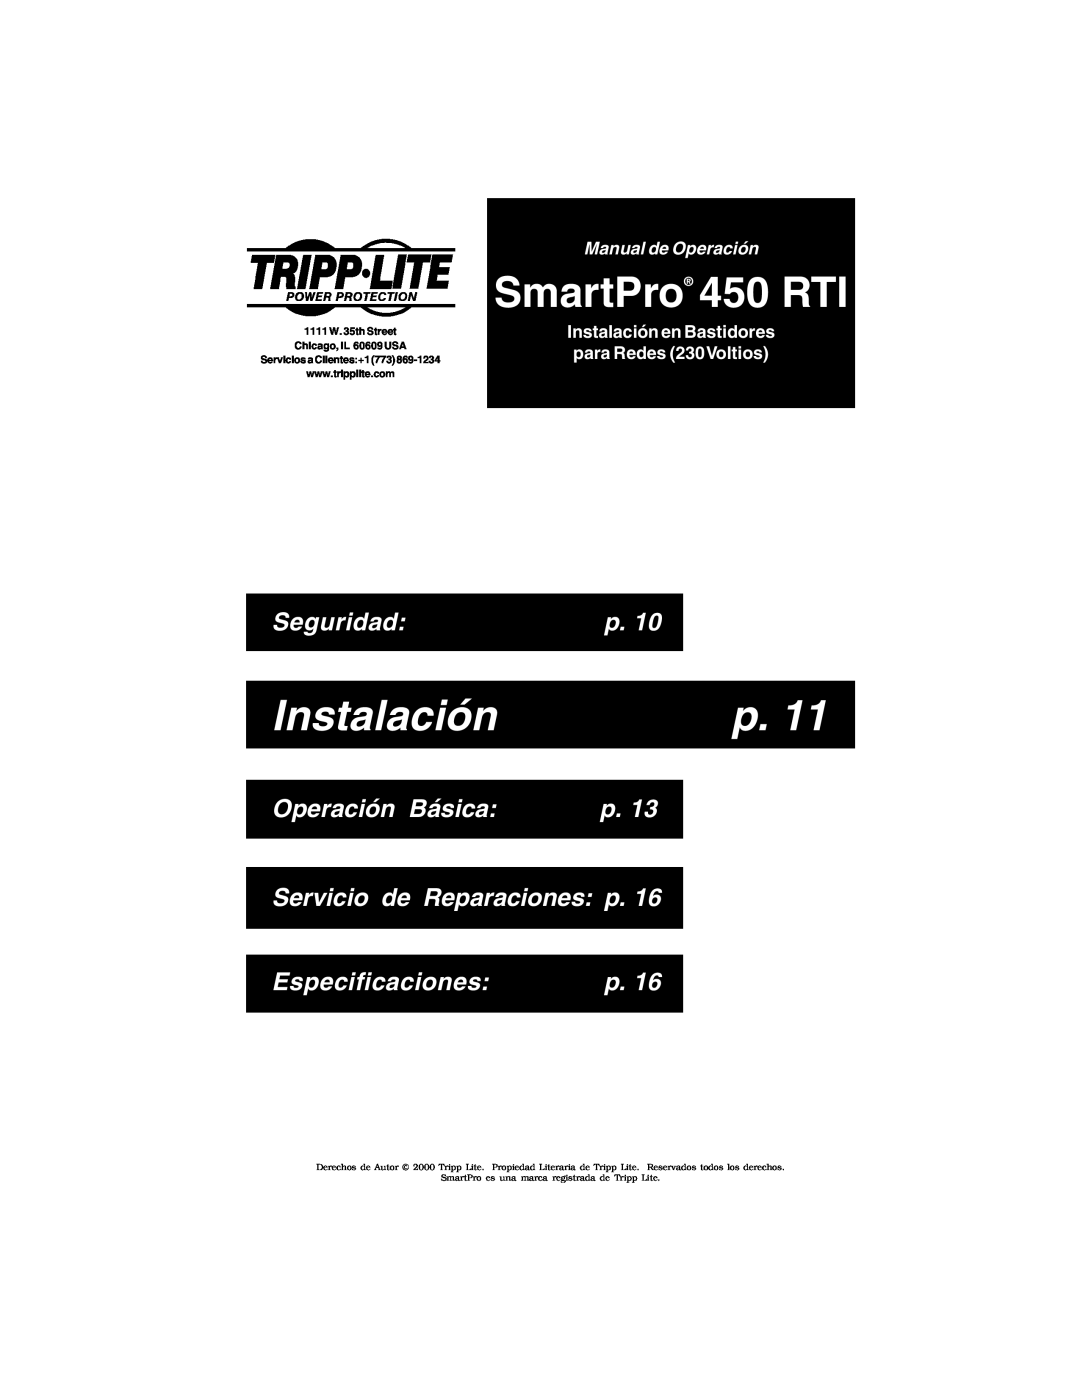 Tripp Lite SmartPro 450 RTI, Instalación, Seguridad, Operación Básica, Servicio de Reparaciones p, Especificaciones 